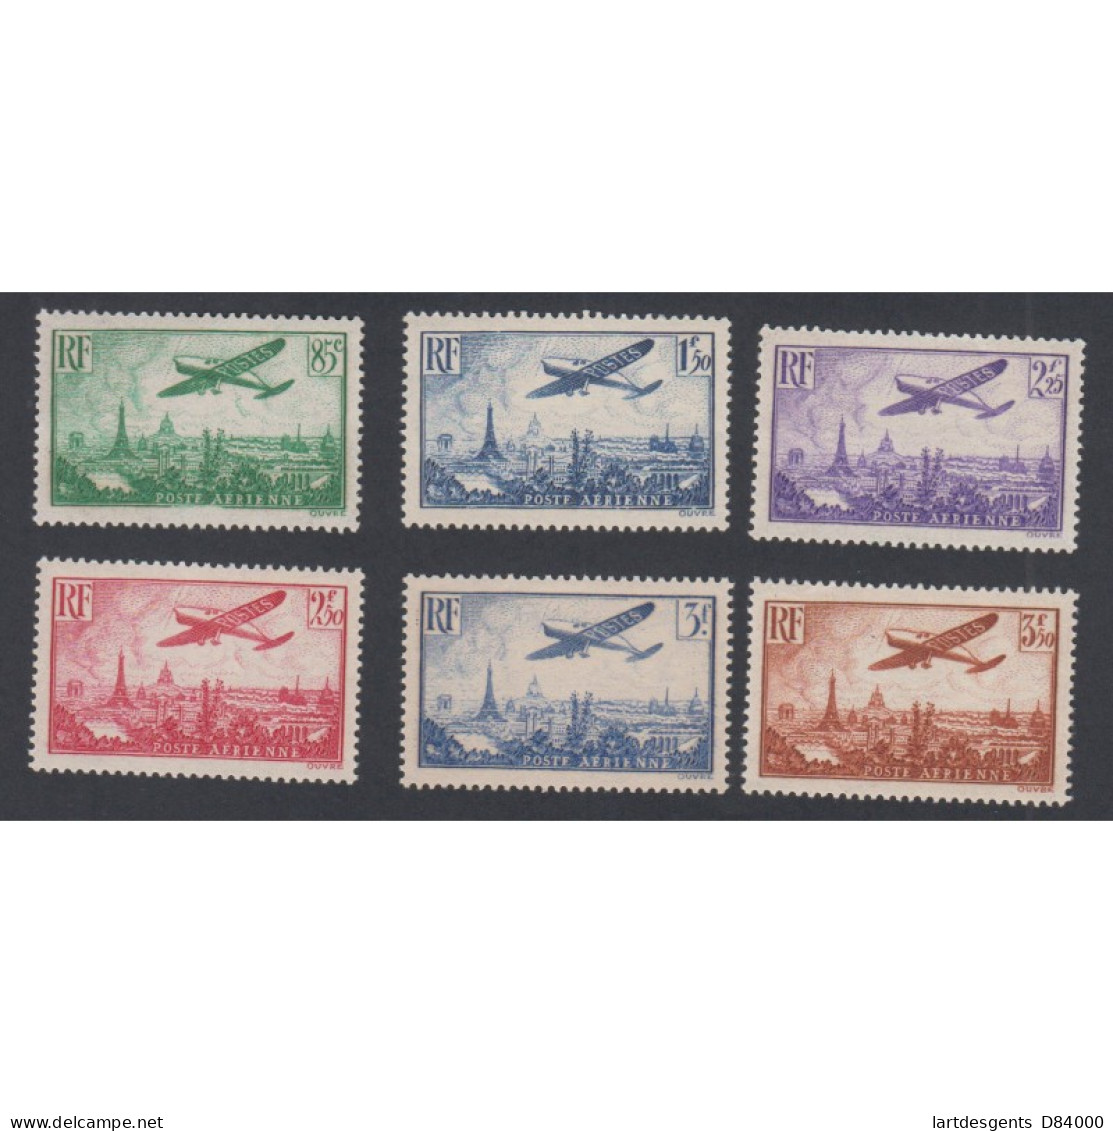 Timbres Poste Aérienne -  N°8 à N°13 - 1936 - Neufs** - Cote 300 Euros- Lartdesgents - 1927-1959 Nuevos